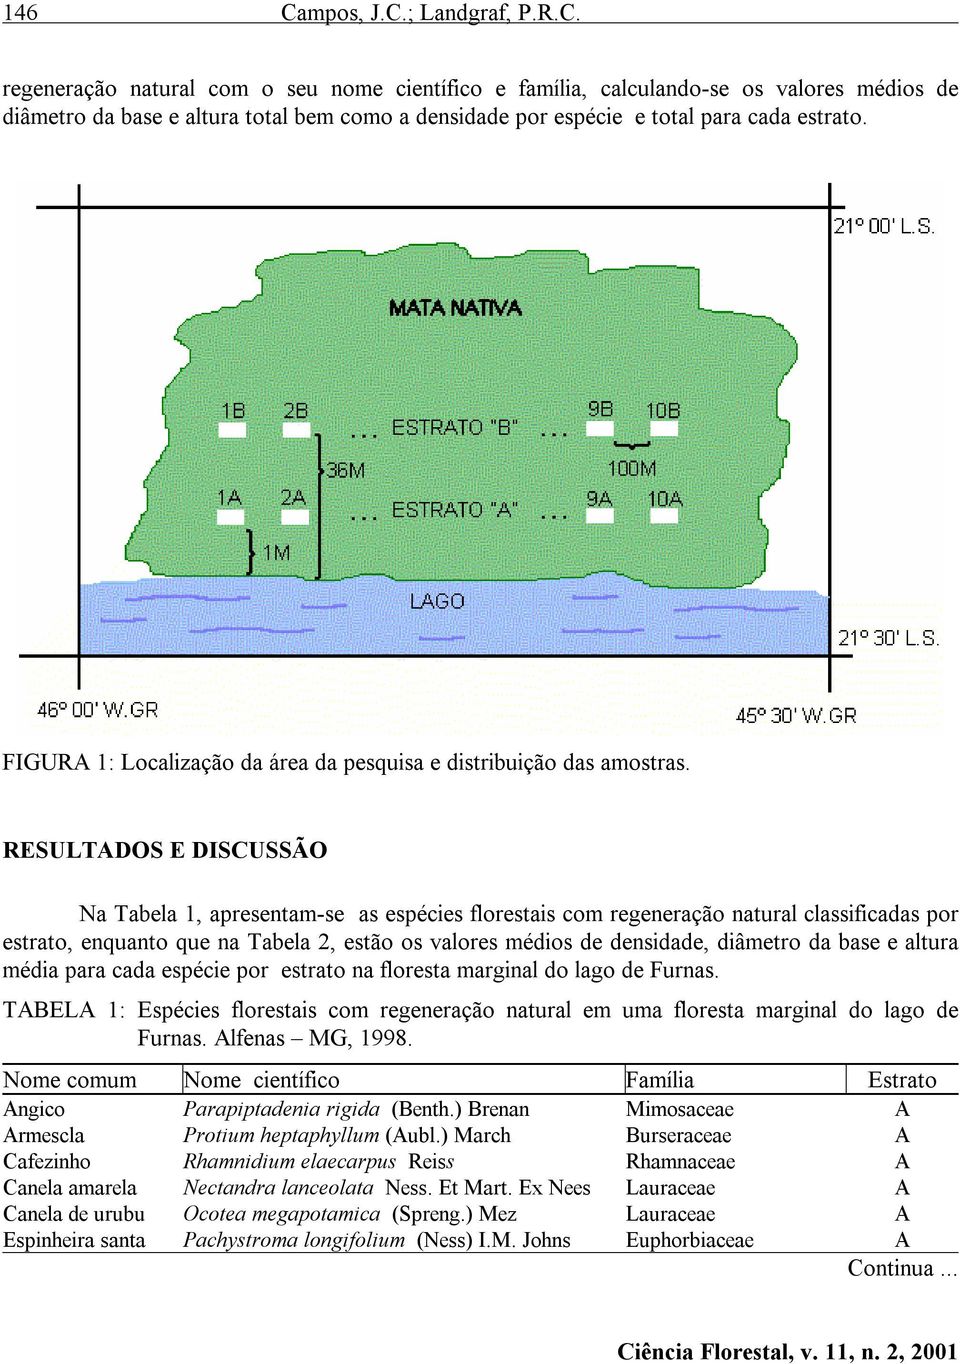 RESULTADOS E DISCUSSÃO Na Tabela 1, apresentam-se as espécies florestais com regeneração natural classificadas por estrato, enquanto que na Tabela 2, estão os valores médios de densidade, diâmetro da